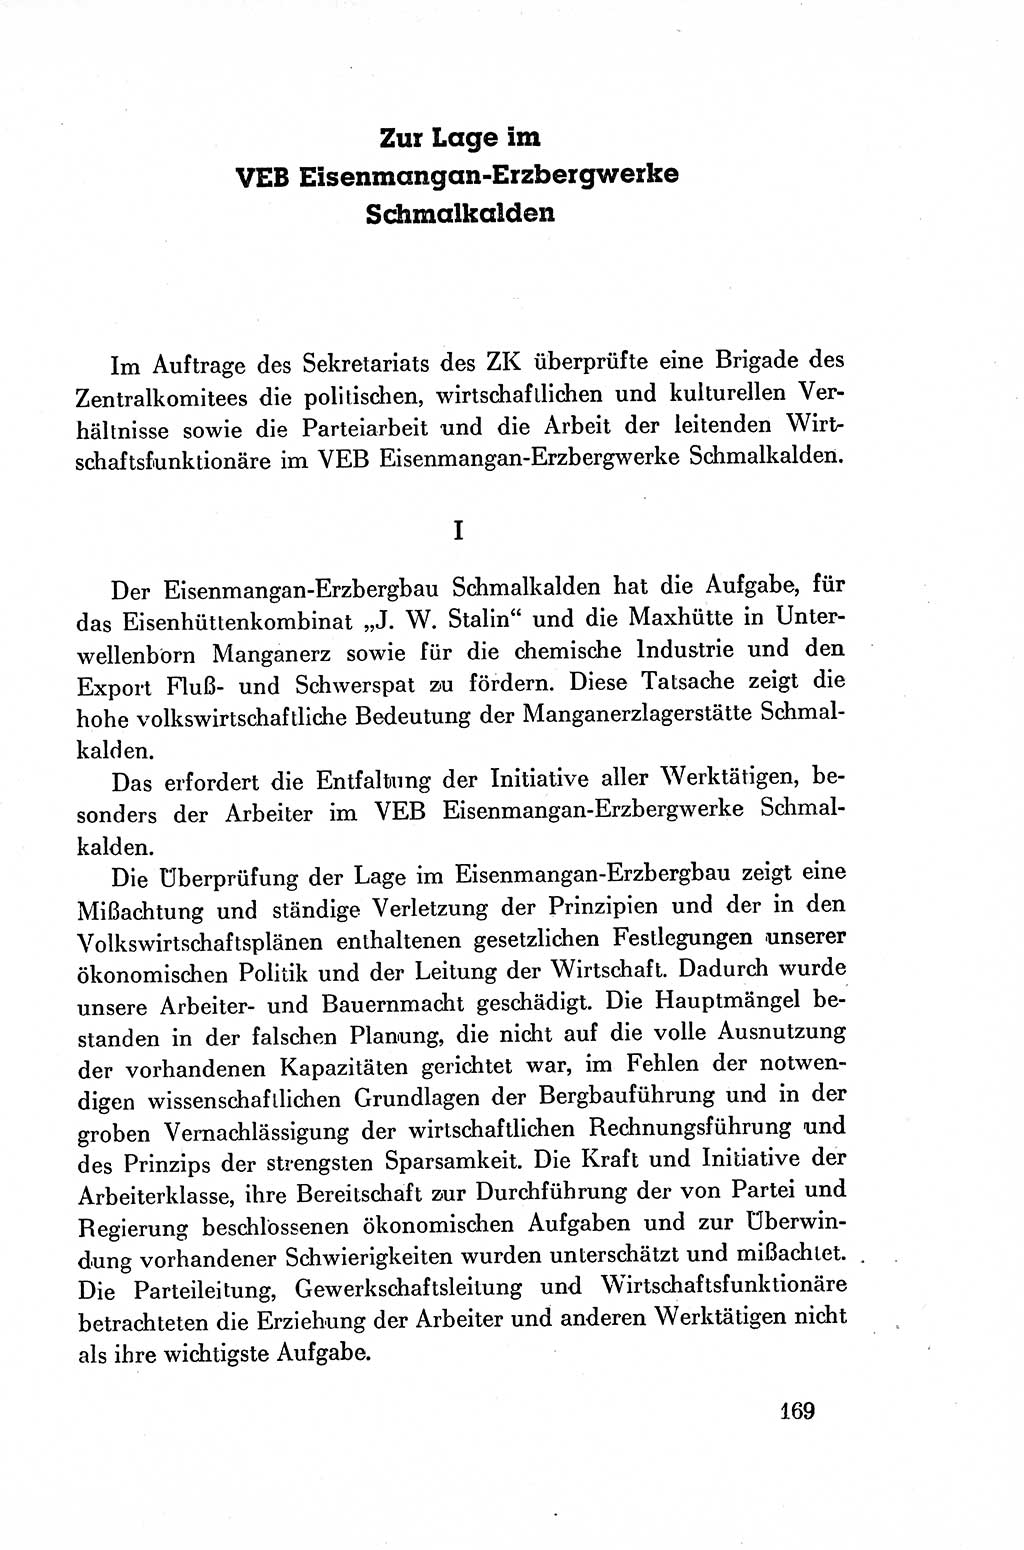 Dokumente der Sozialistischen Einheitspartei Deutschlands (SED) [Deutsche Demokratische Republik (DDR)] 1954-1955, Seite 169 (Dok. SED DDR 1954-1955, S. 169)